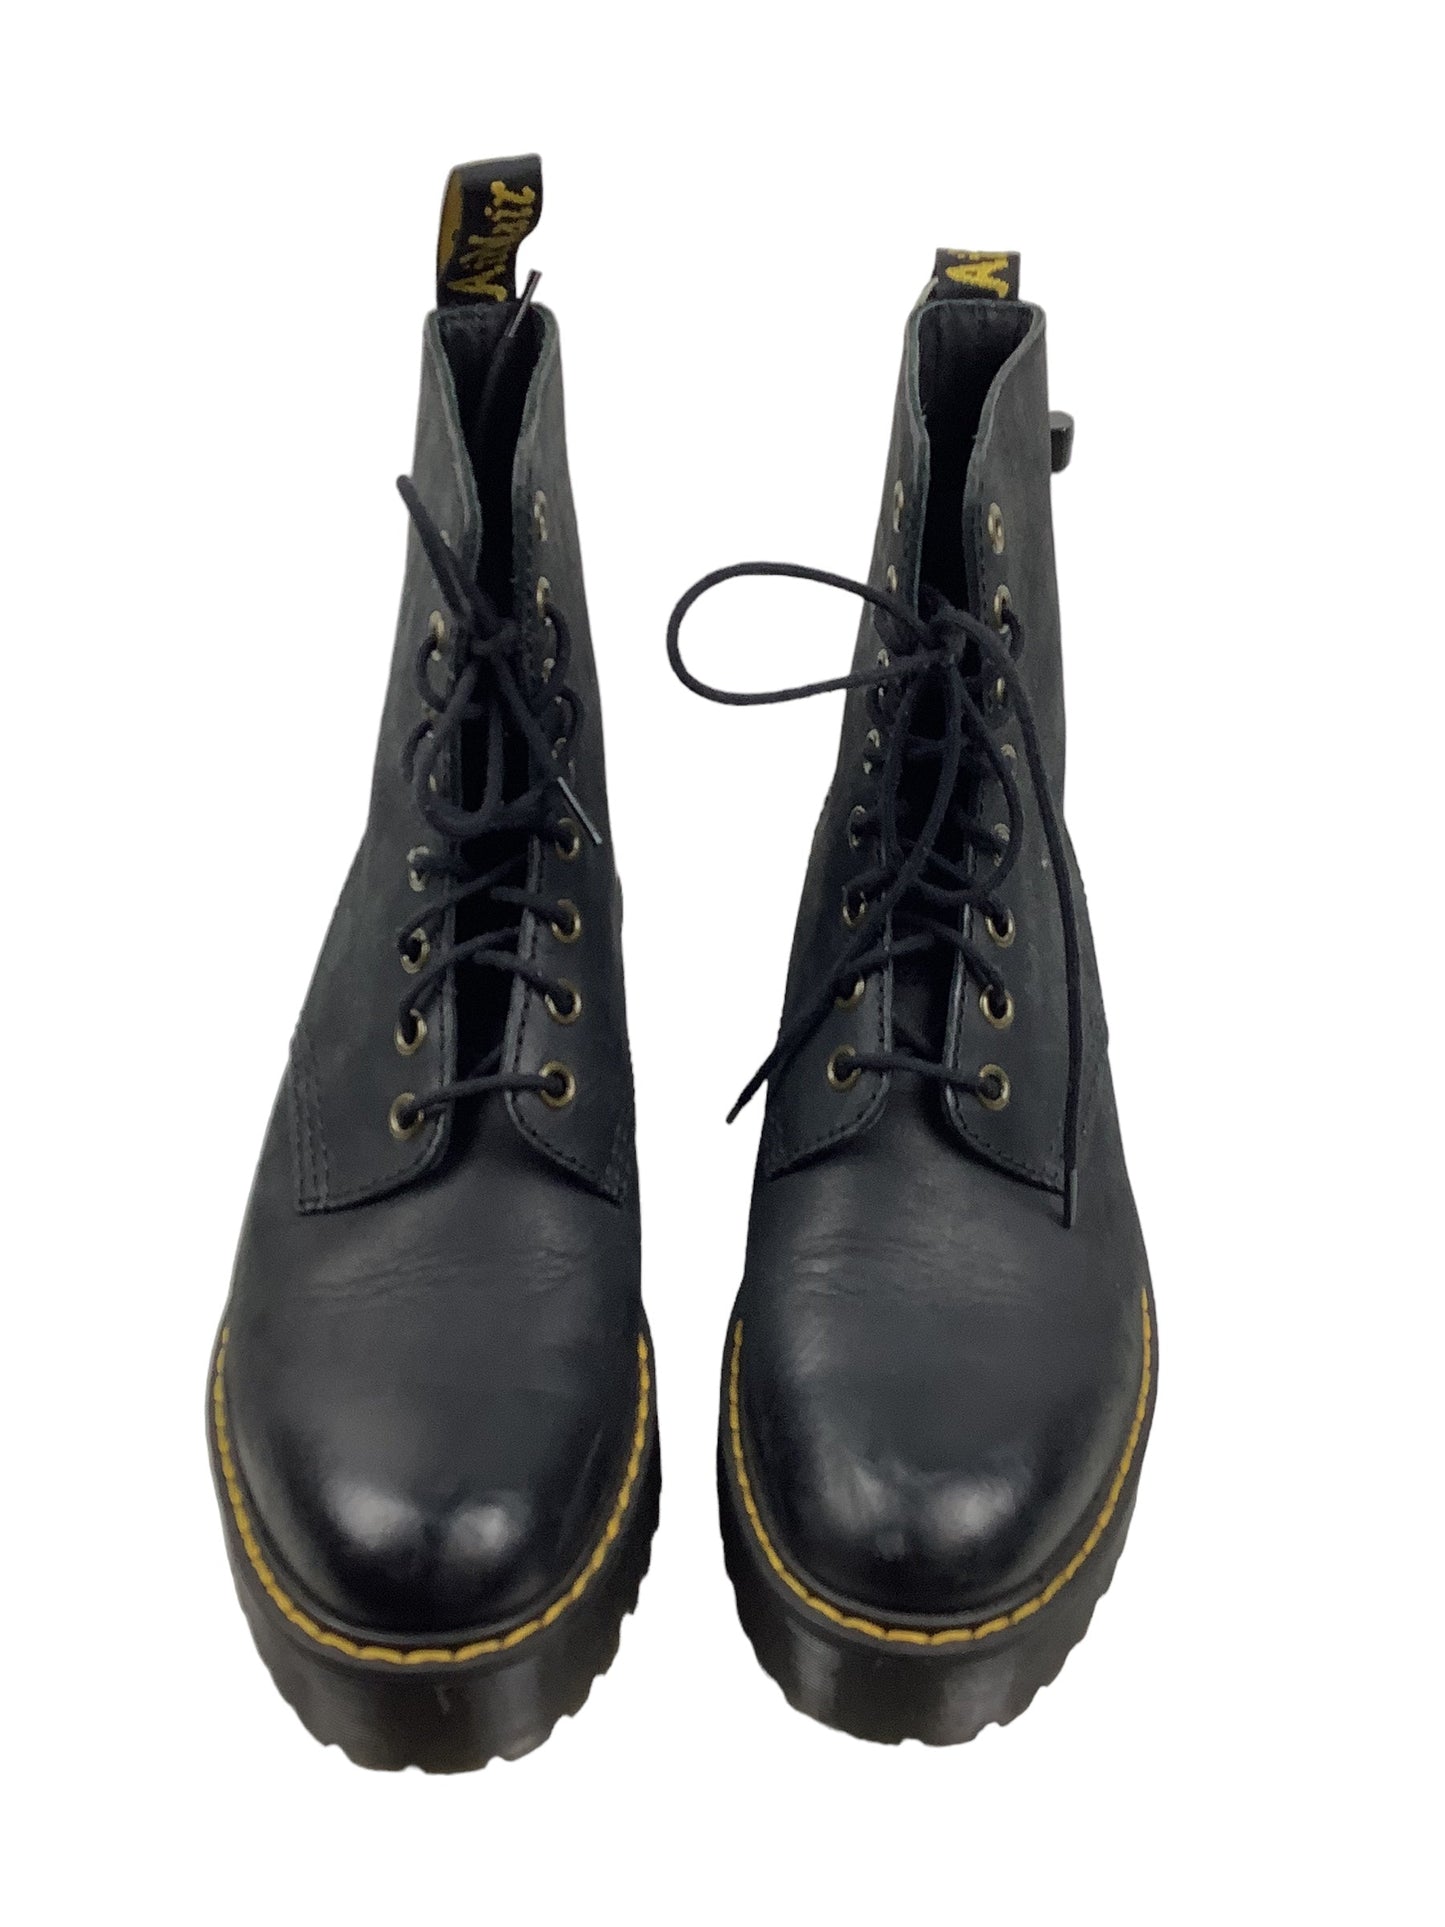 Black Boots Designer Dr Martens, Size 7